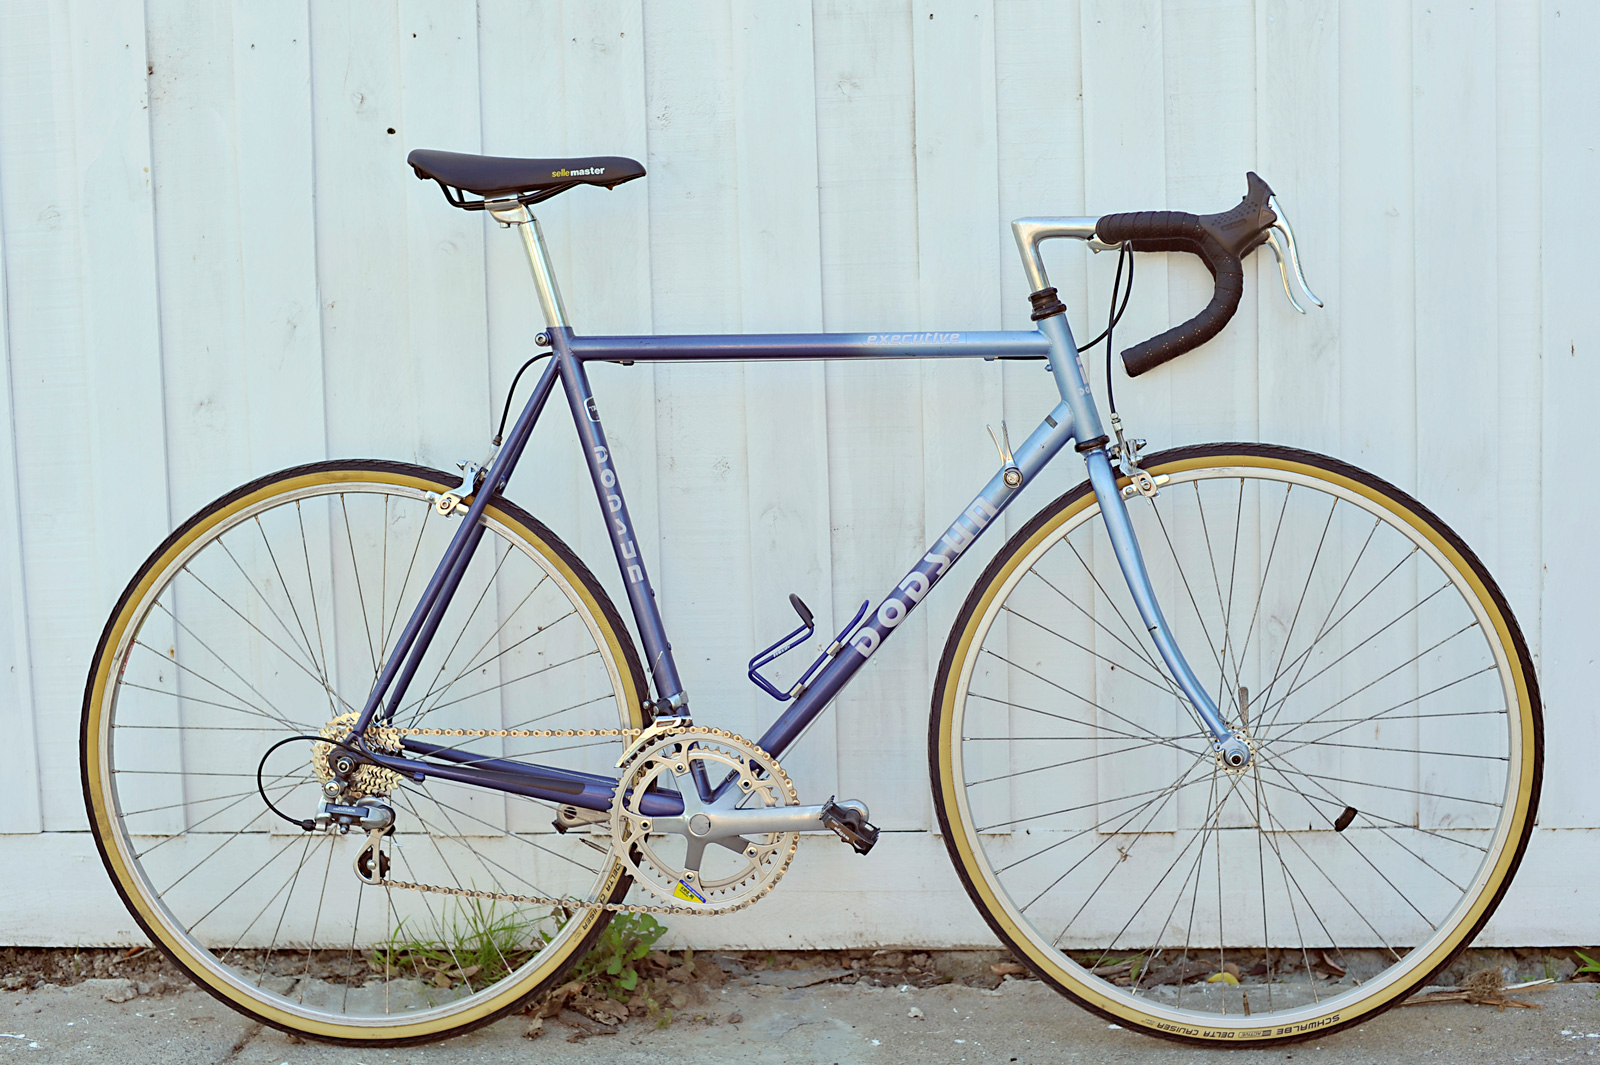 55cm bike